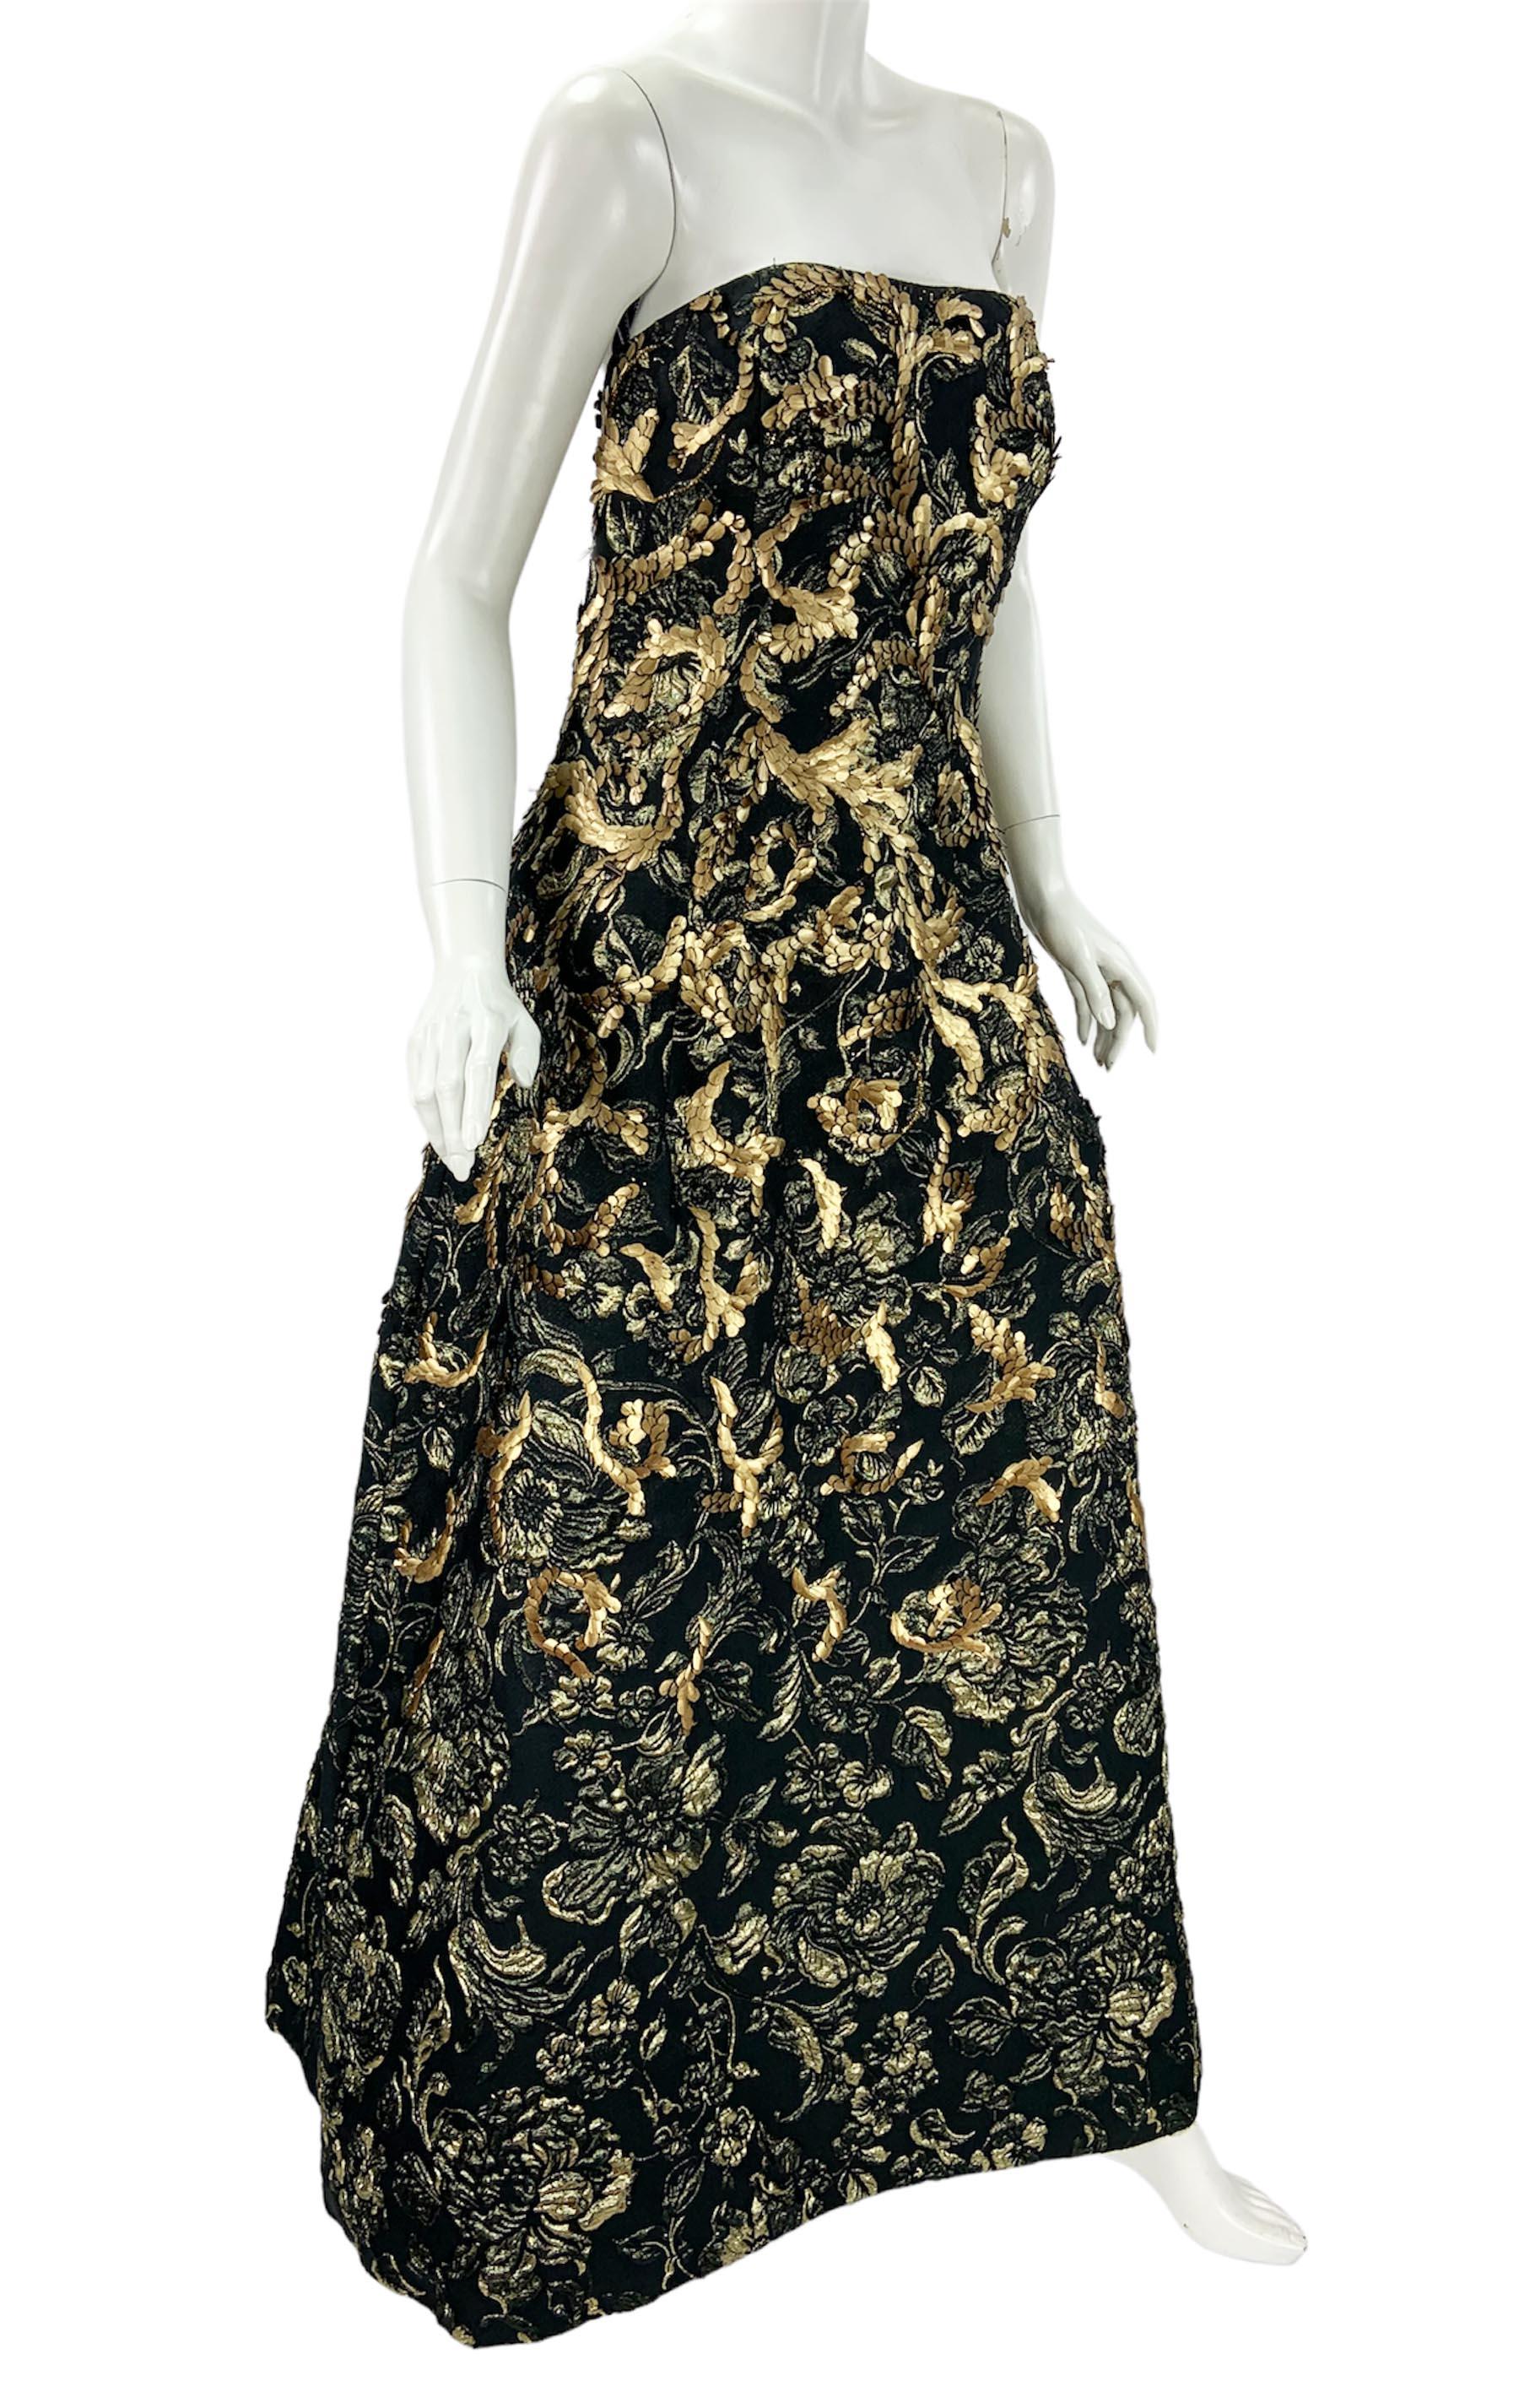 Oscar de la Renta FW 2014 Runway Museum Red Carpet Black Gold Gown Dress L / XL For Sale 2